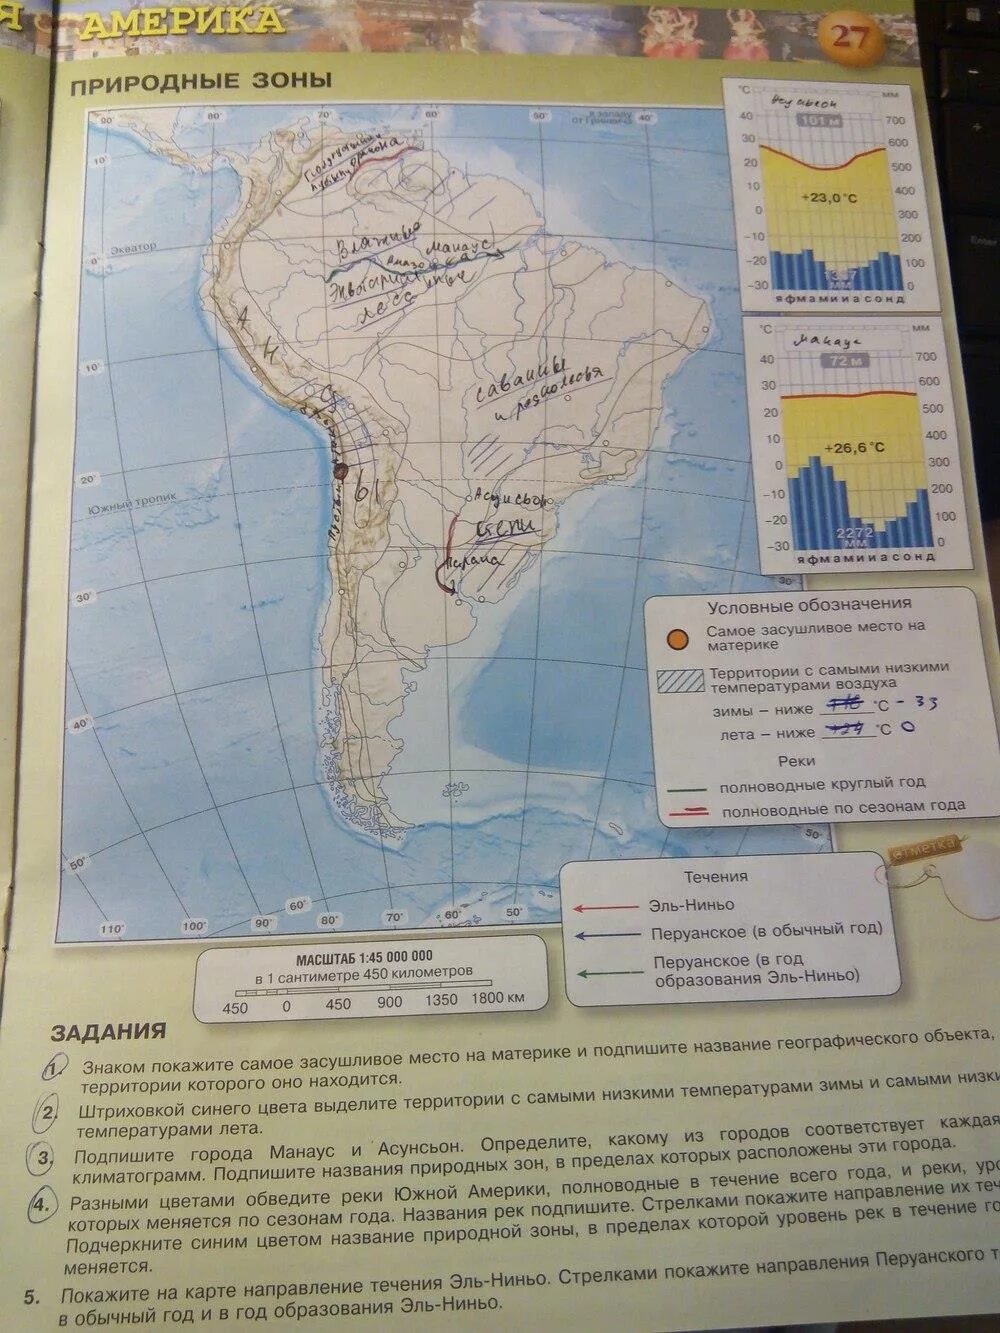 География 7 класс контурные карты стр 27. Карта Южной Америки 7 класс география. Карта по географии 7 класс Южная Америка. Контурные карты 7 класс география стр 27